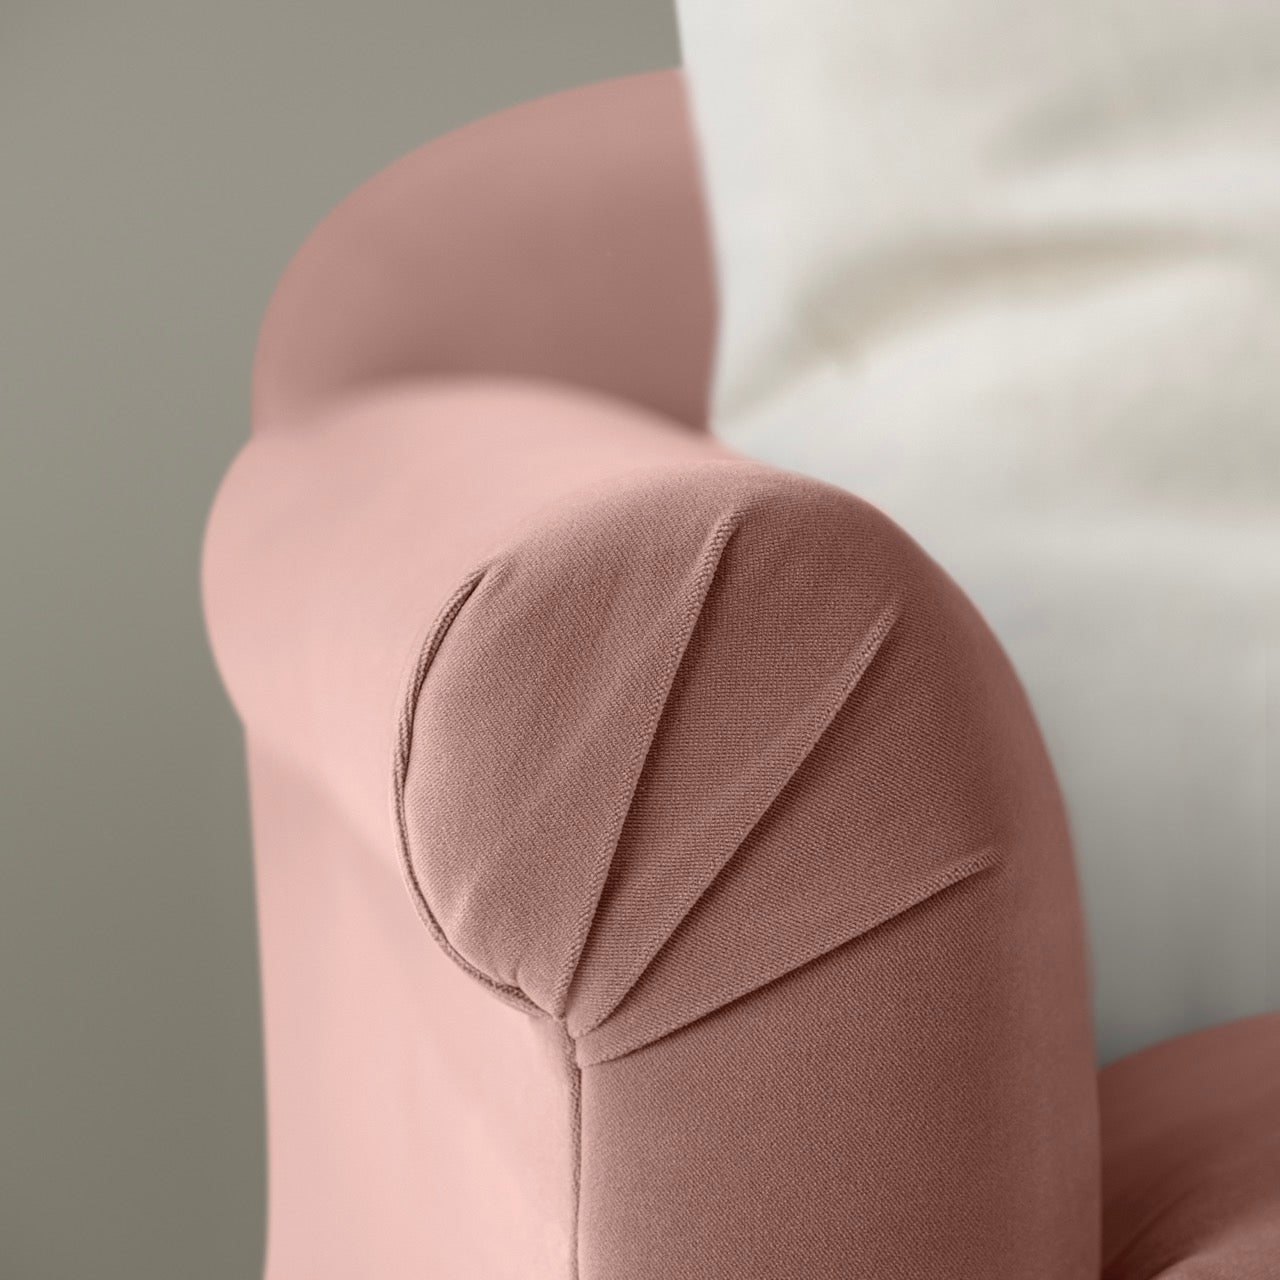  Dolittle 4 seater Sofa in Intelligent Velvet Dusky Pink 